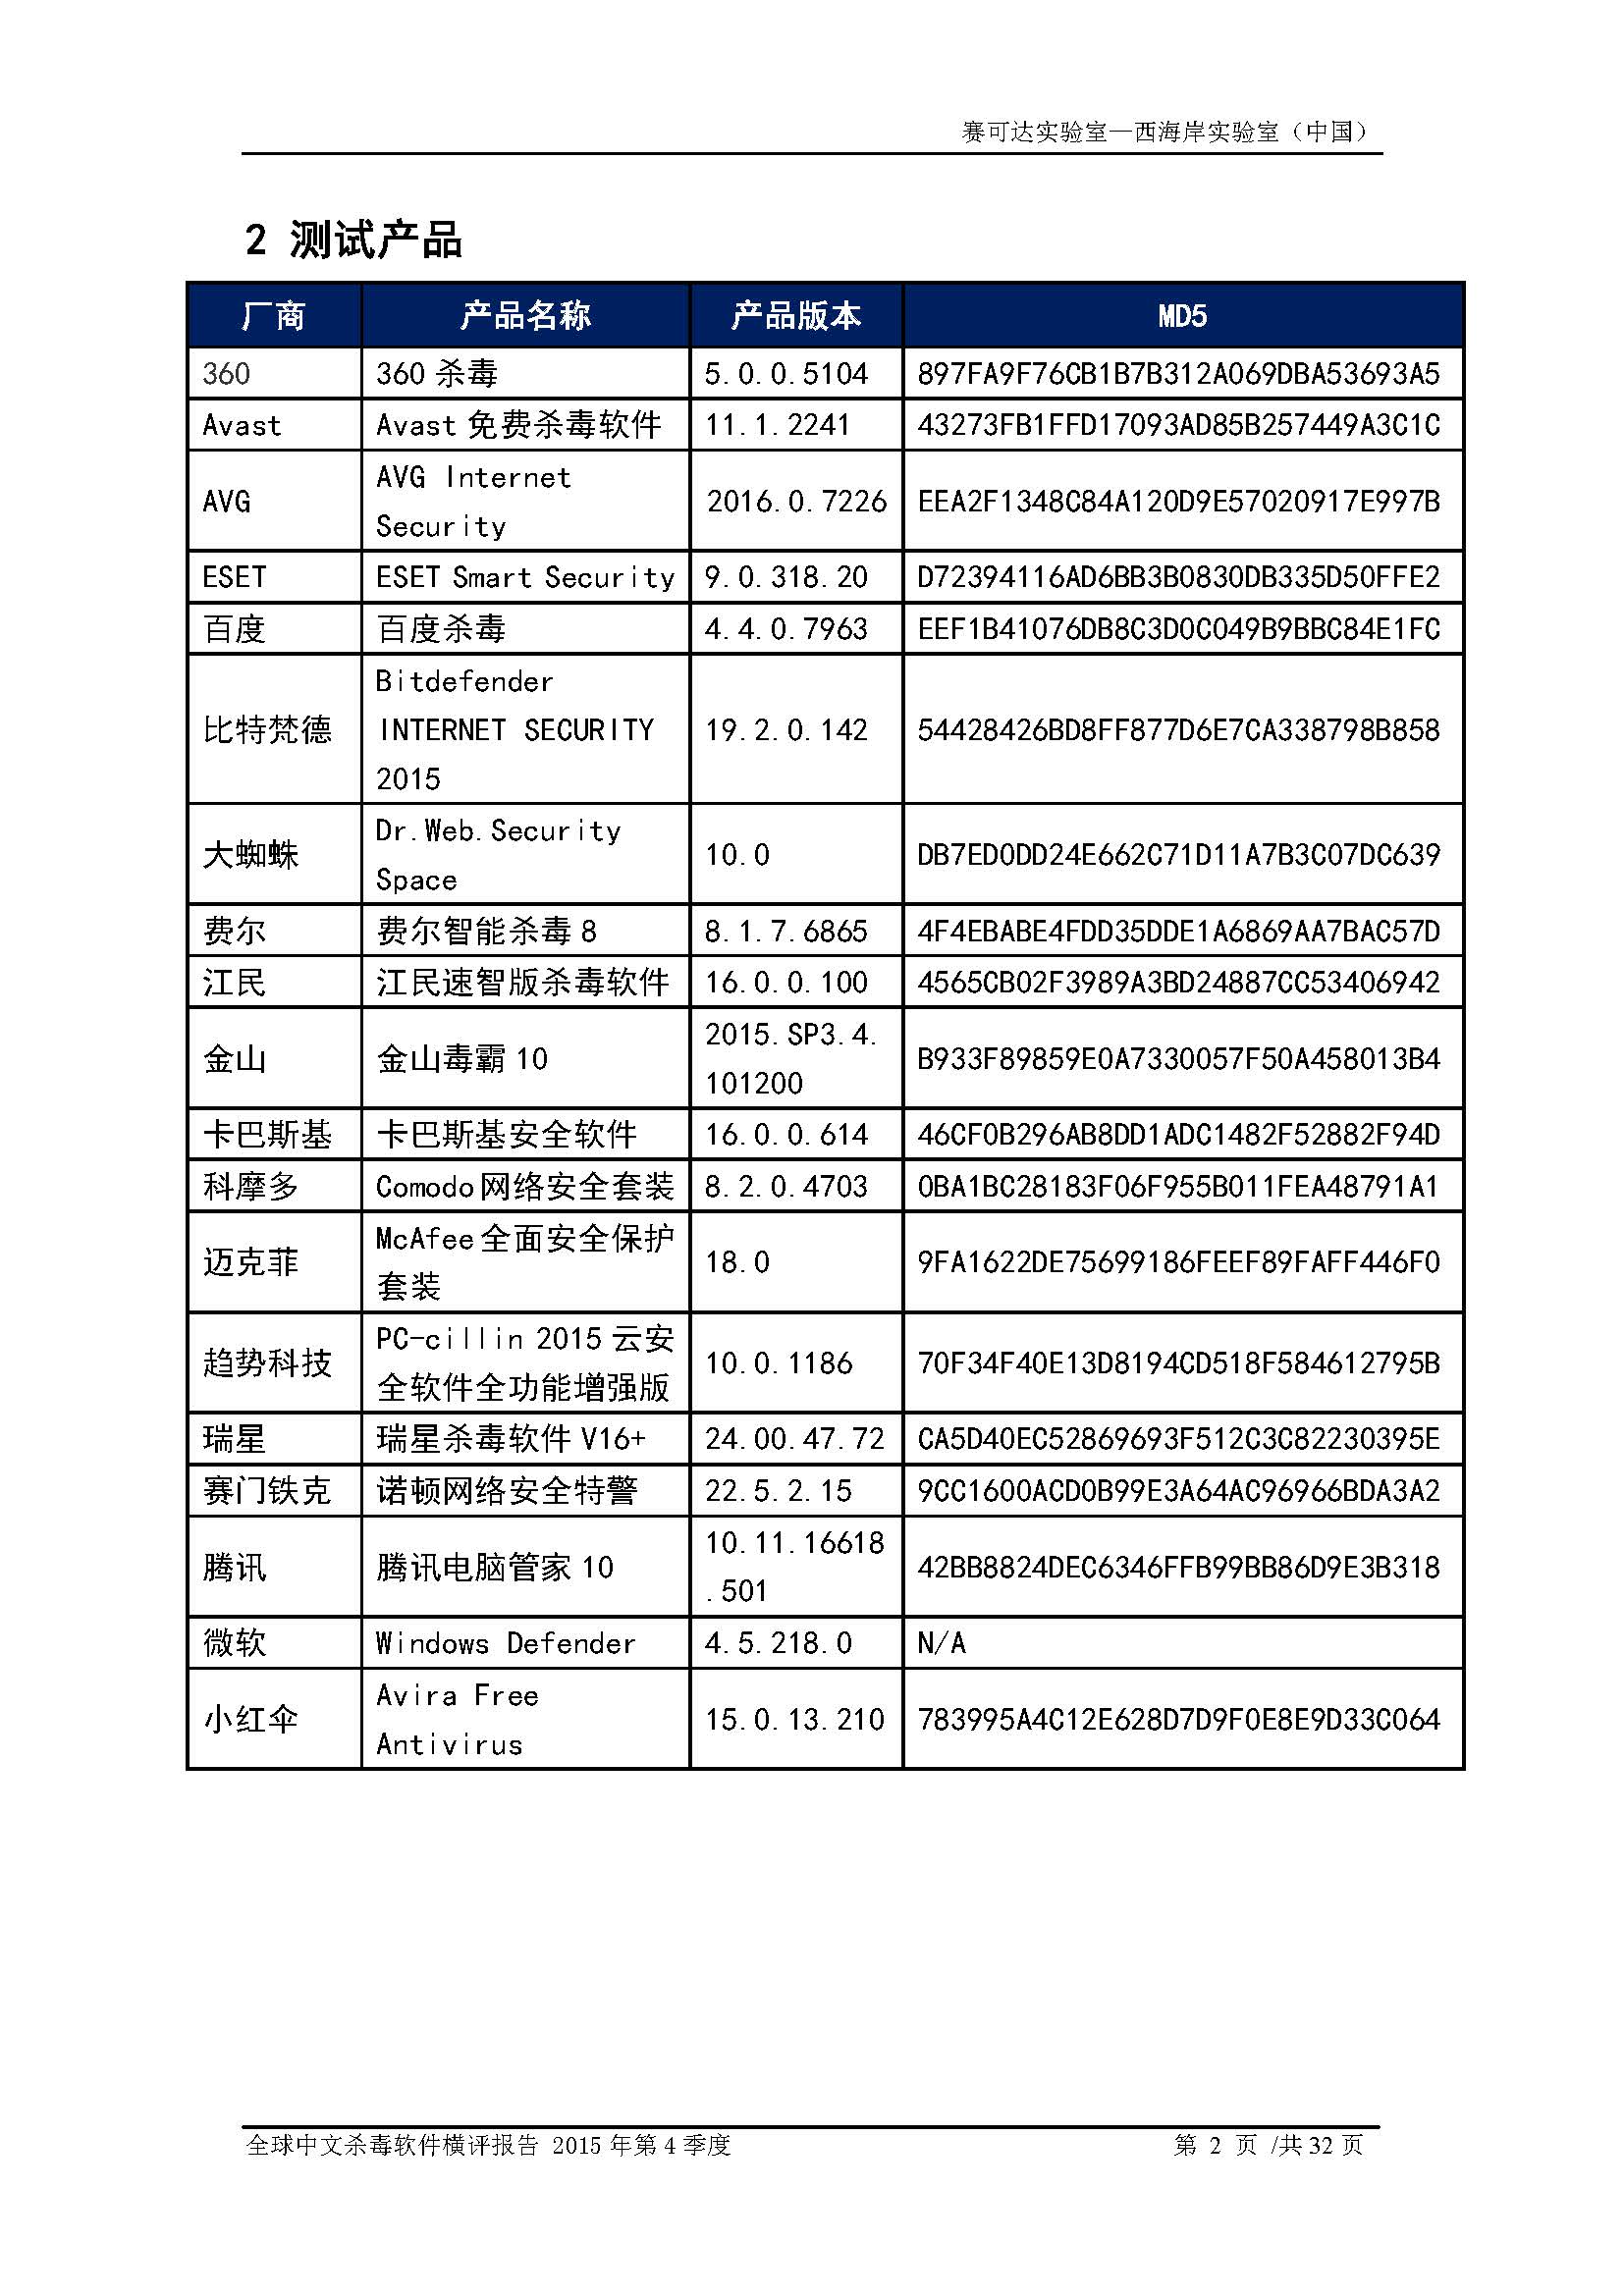 中文PC杀毒软件横评测试报告- Windows 8.1【中文版】.pdf (_Page_04.jpg